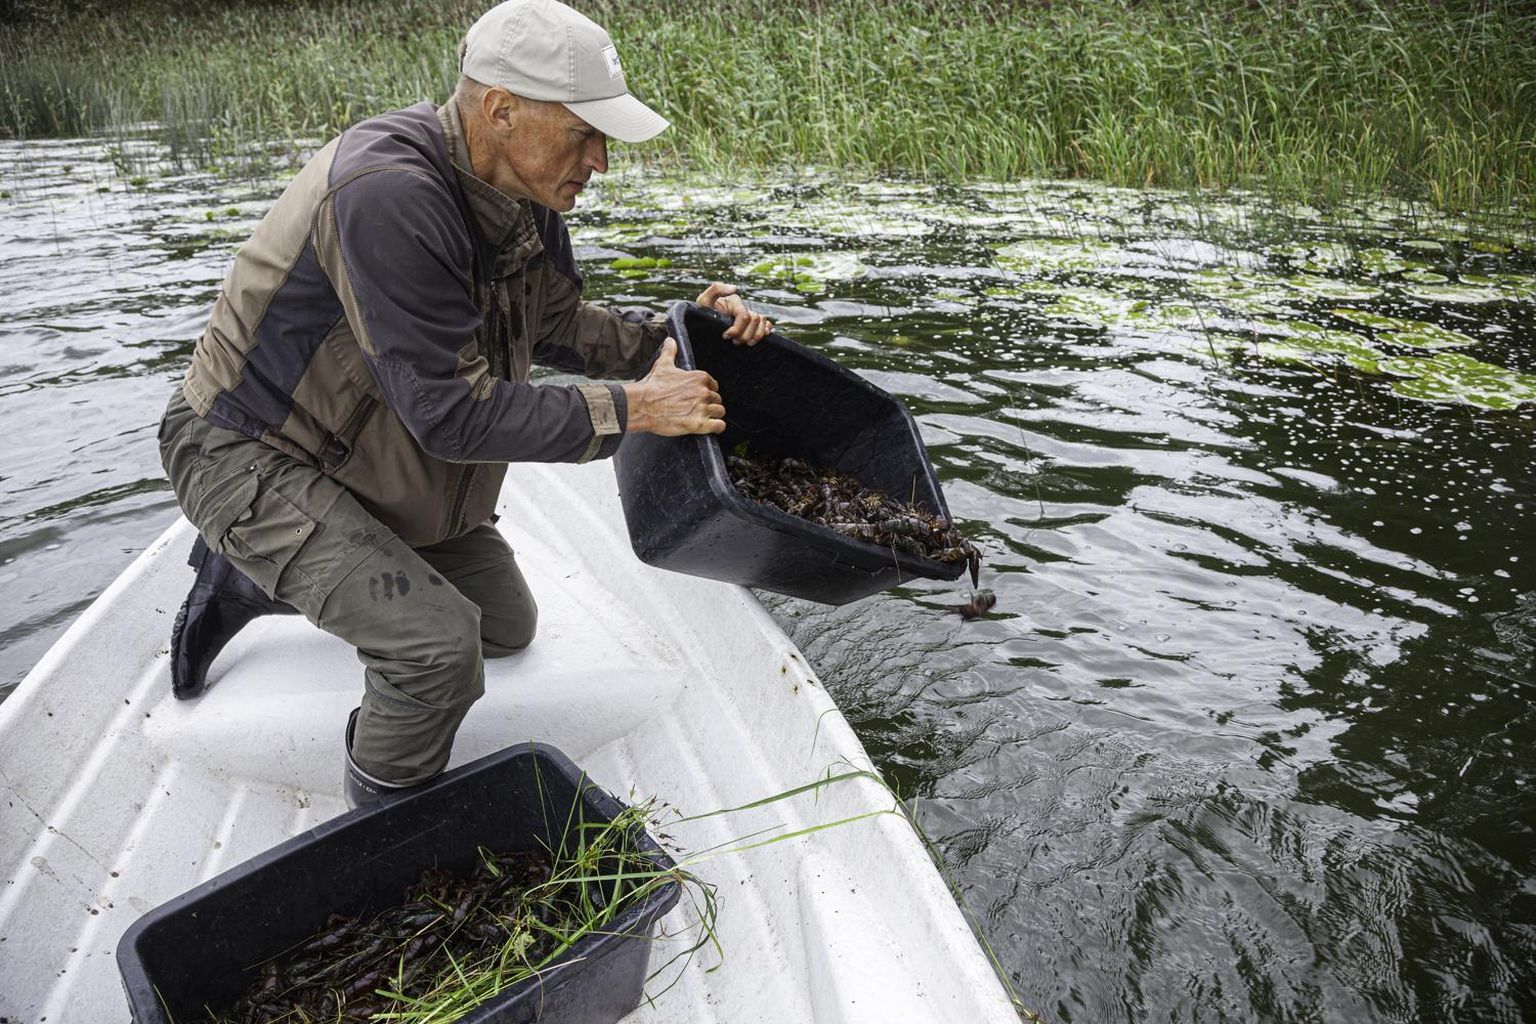 Keskkonnaamet asustab Pärnumaa veekogudesse 1500 jõevähki.